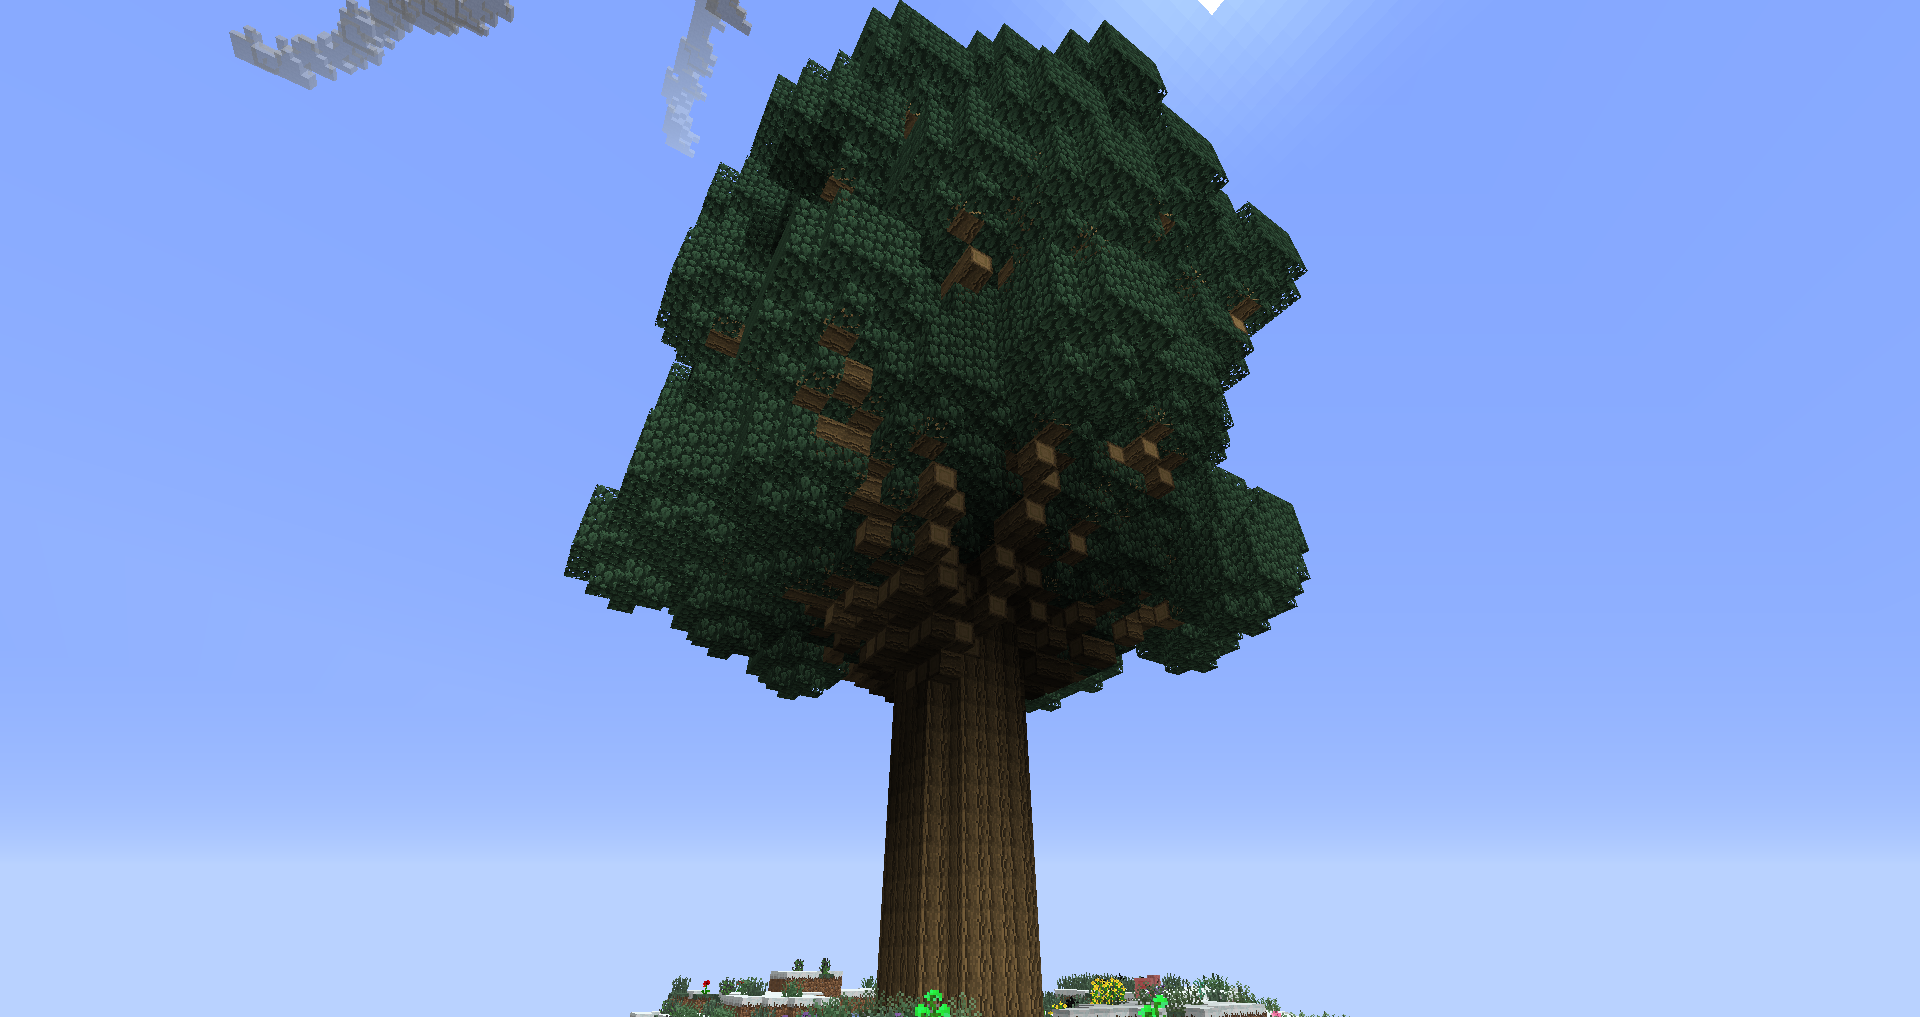 Огромное дерево майнкрафт. Тутовое дерево майнкрафт. Красивое дерево в МАЙНКРАФТЕ. Майнкрафт необычные деревья. Огромное дерево в МАЙНКРАФТЕ.